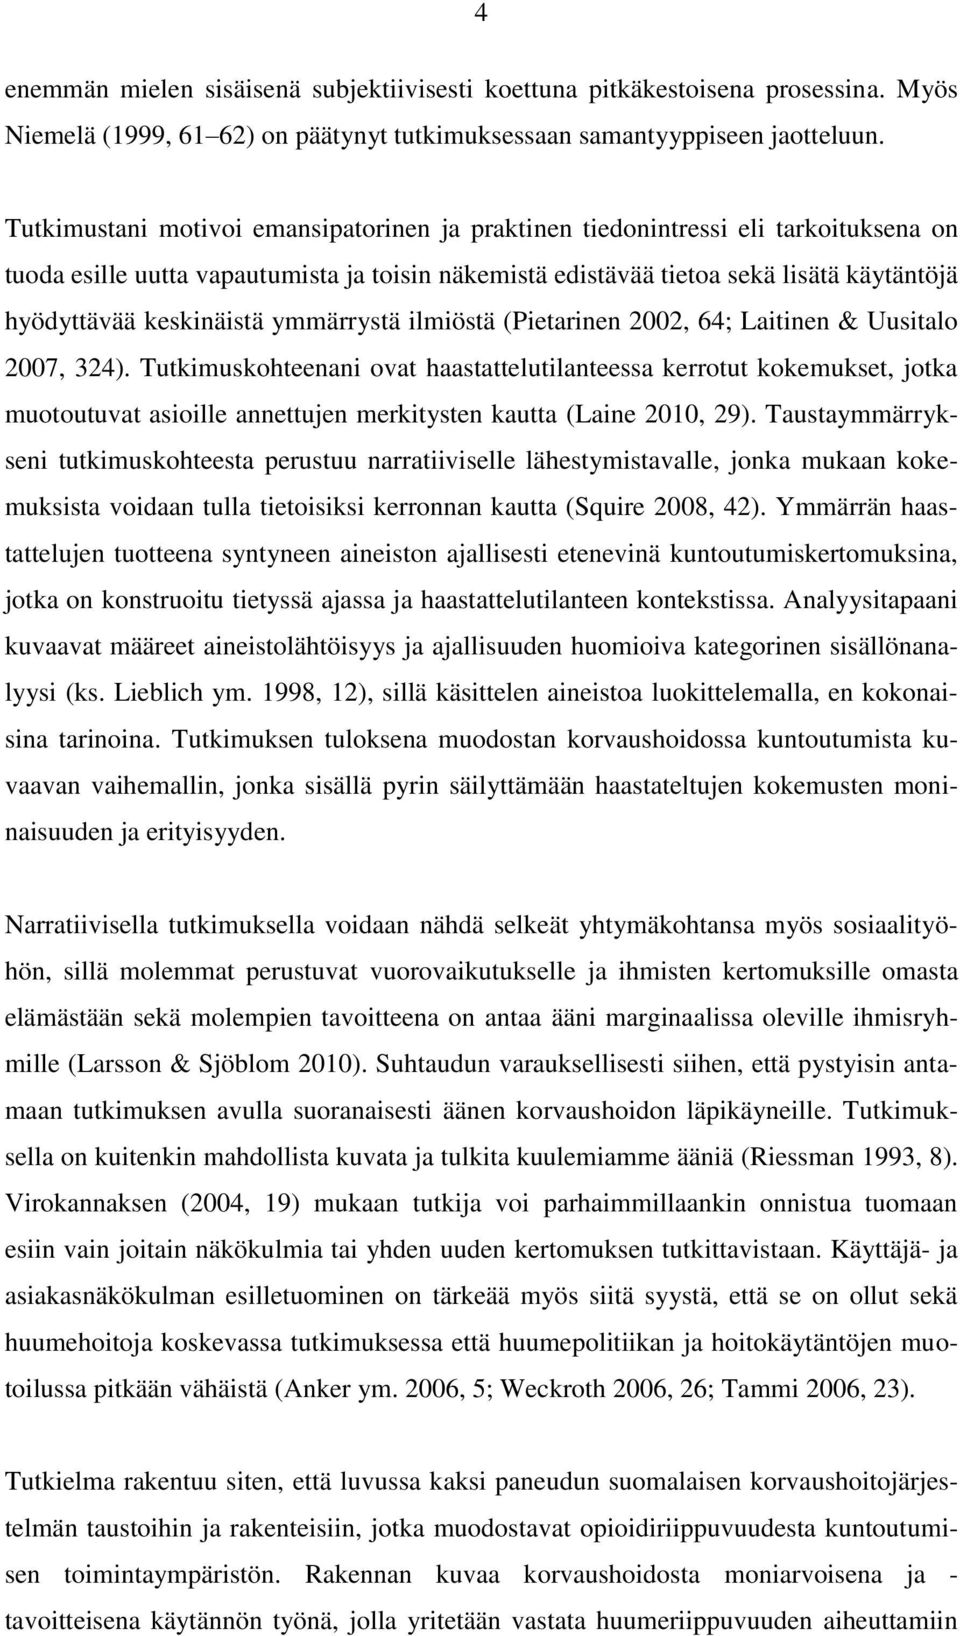 keskinäistä ymmärrystä ilmiöstä (Pietarinen 2002, 64; Laitinen & Uusitalo 2007, 324).